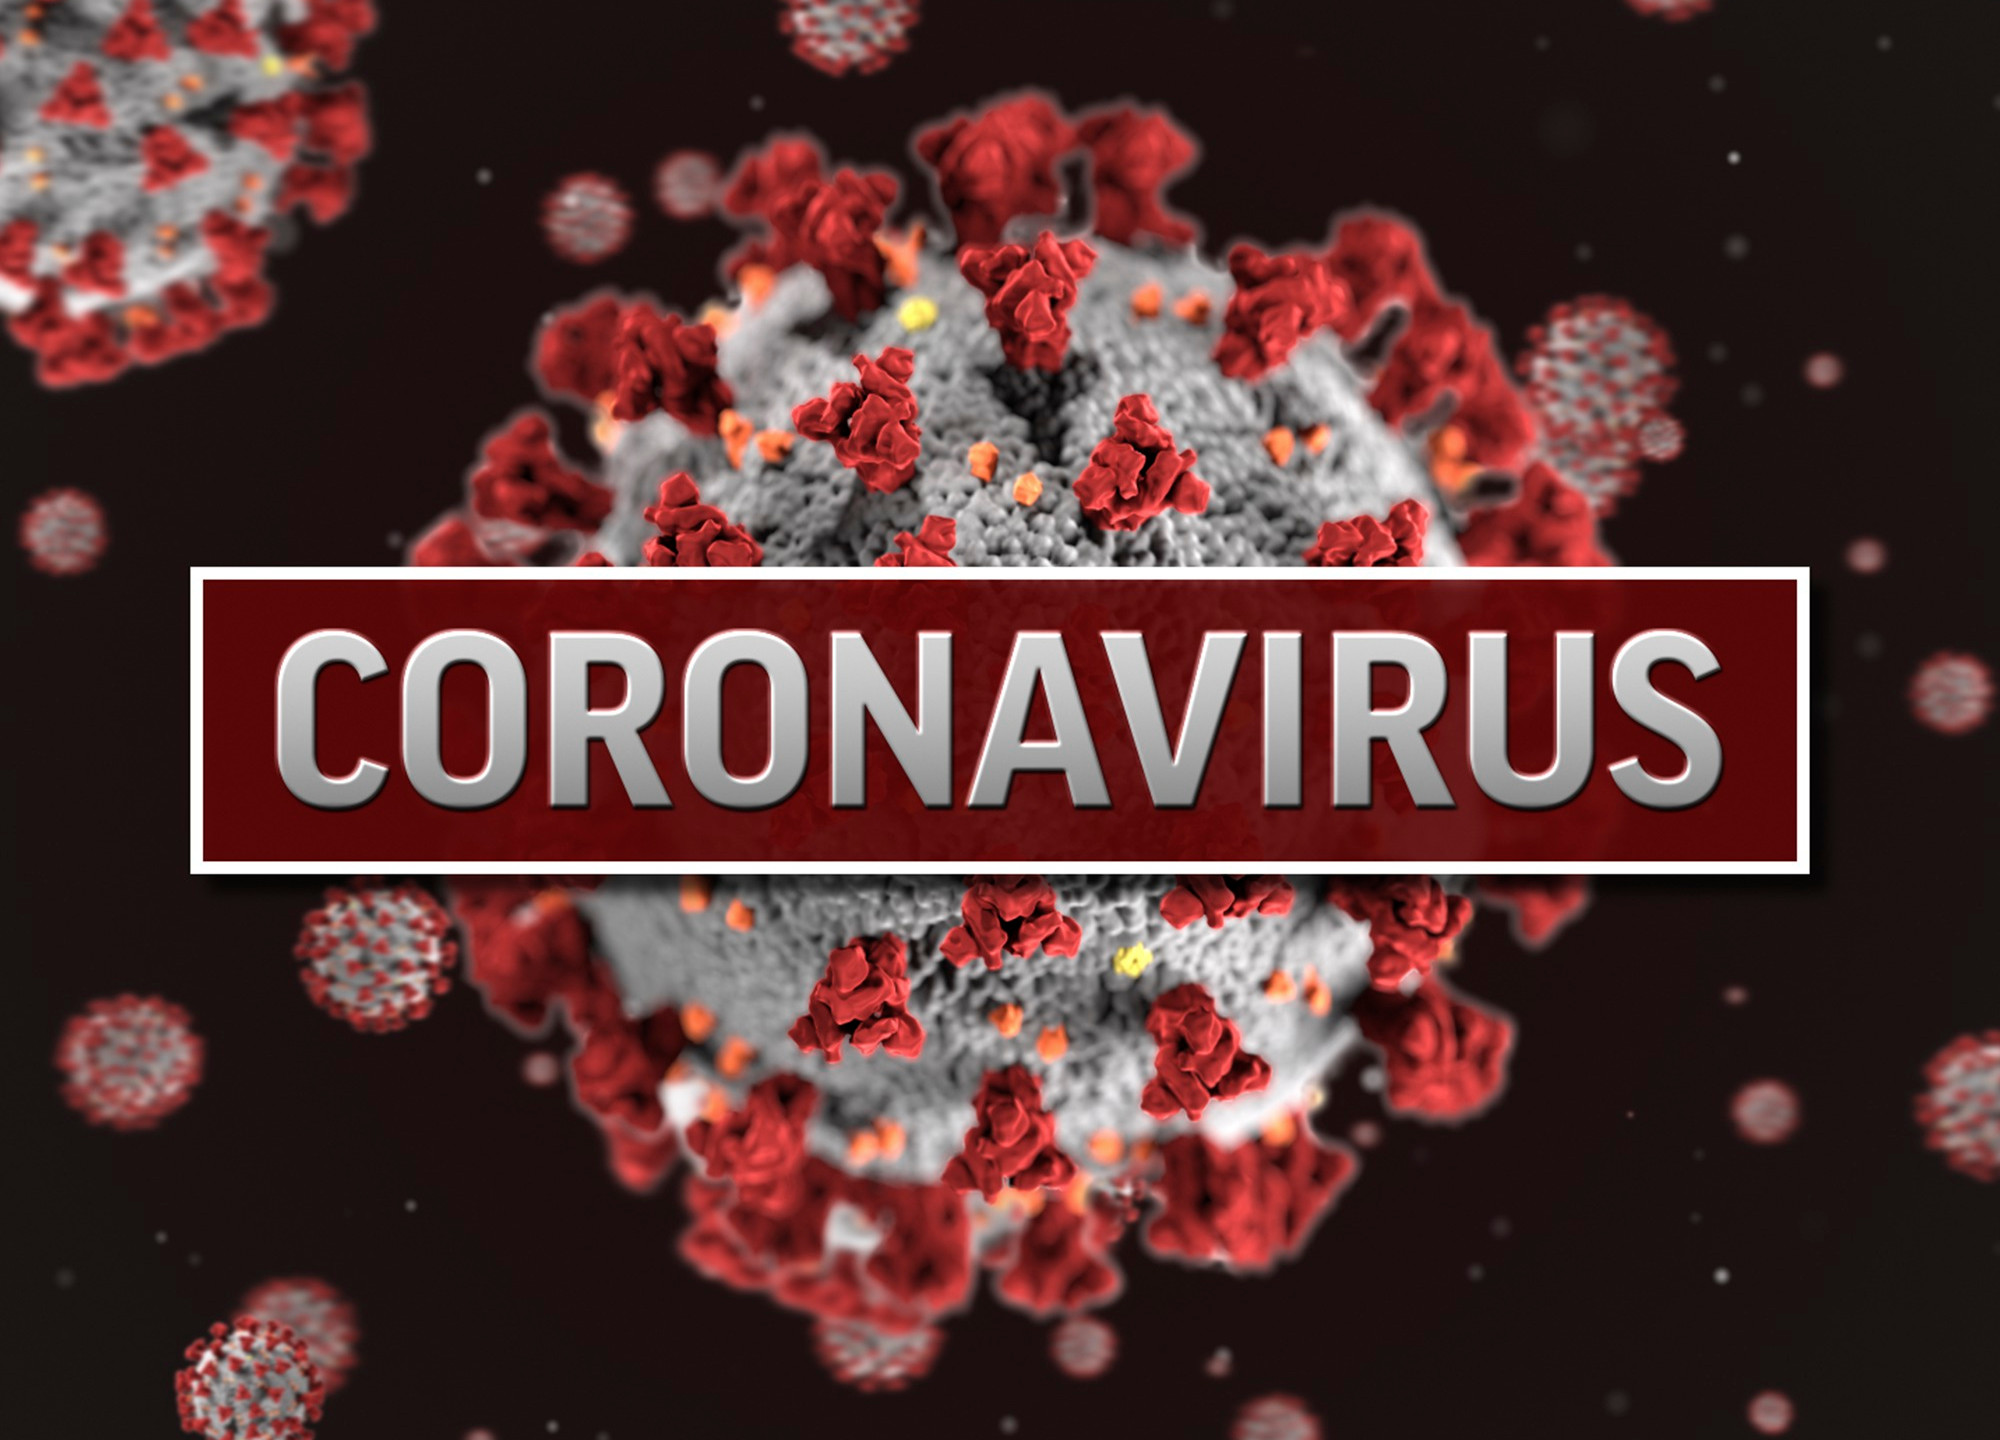 بحث حول فيروس كورونا المستجد (COVID-19) الذي قلب عالمنا رأسًا على عقب